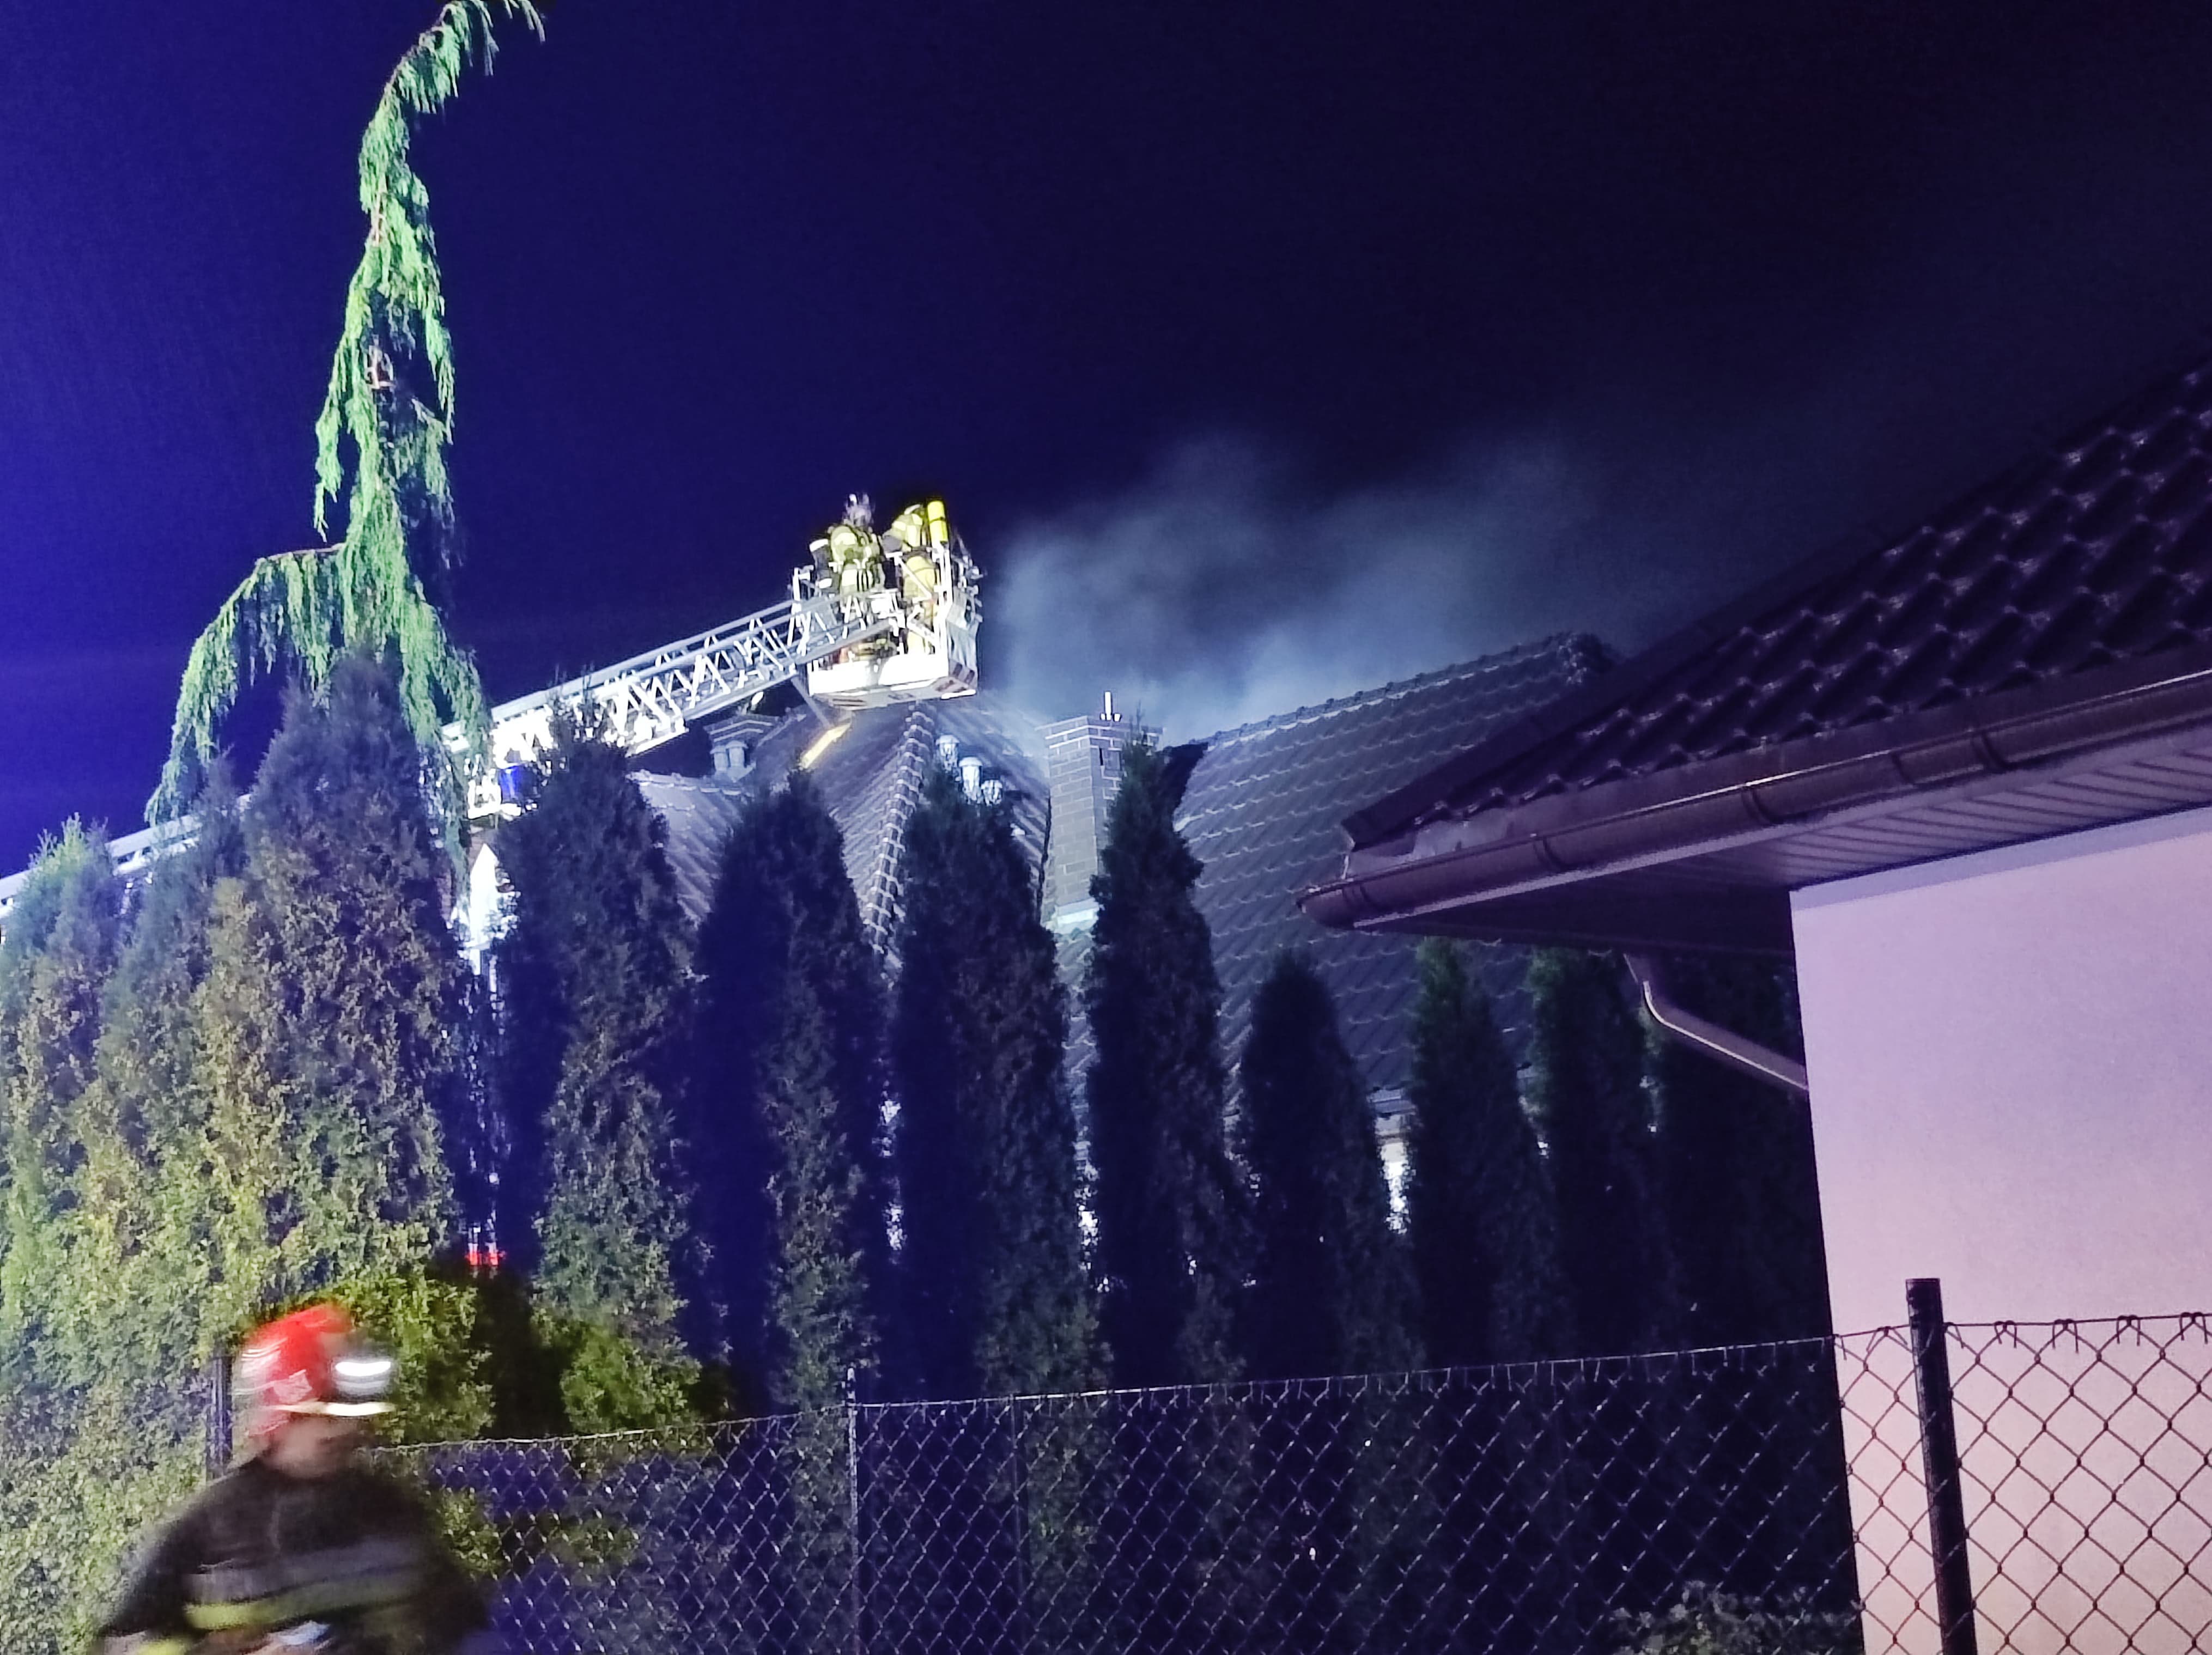 Pożar domu koło Lublina. Wszystko wskazuje na to, że przyczyną było uderzenie pioruna (zdjęcia)